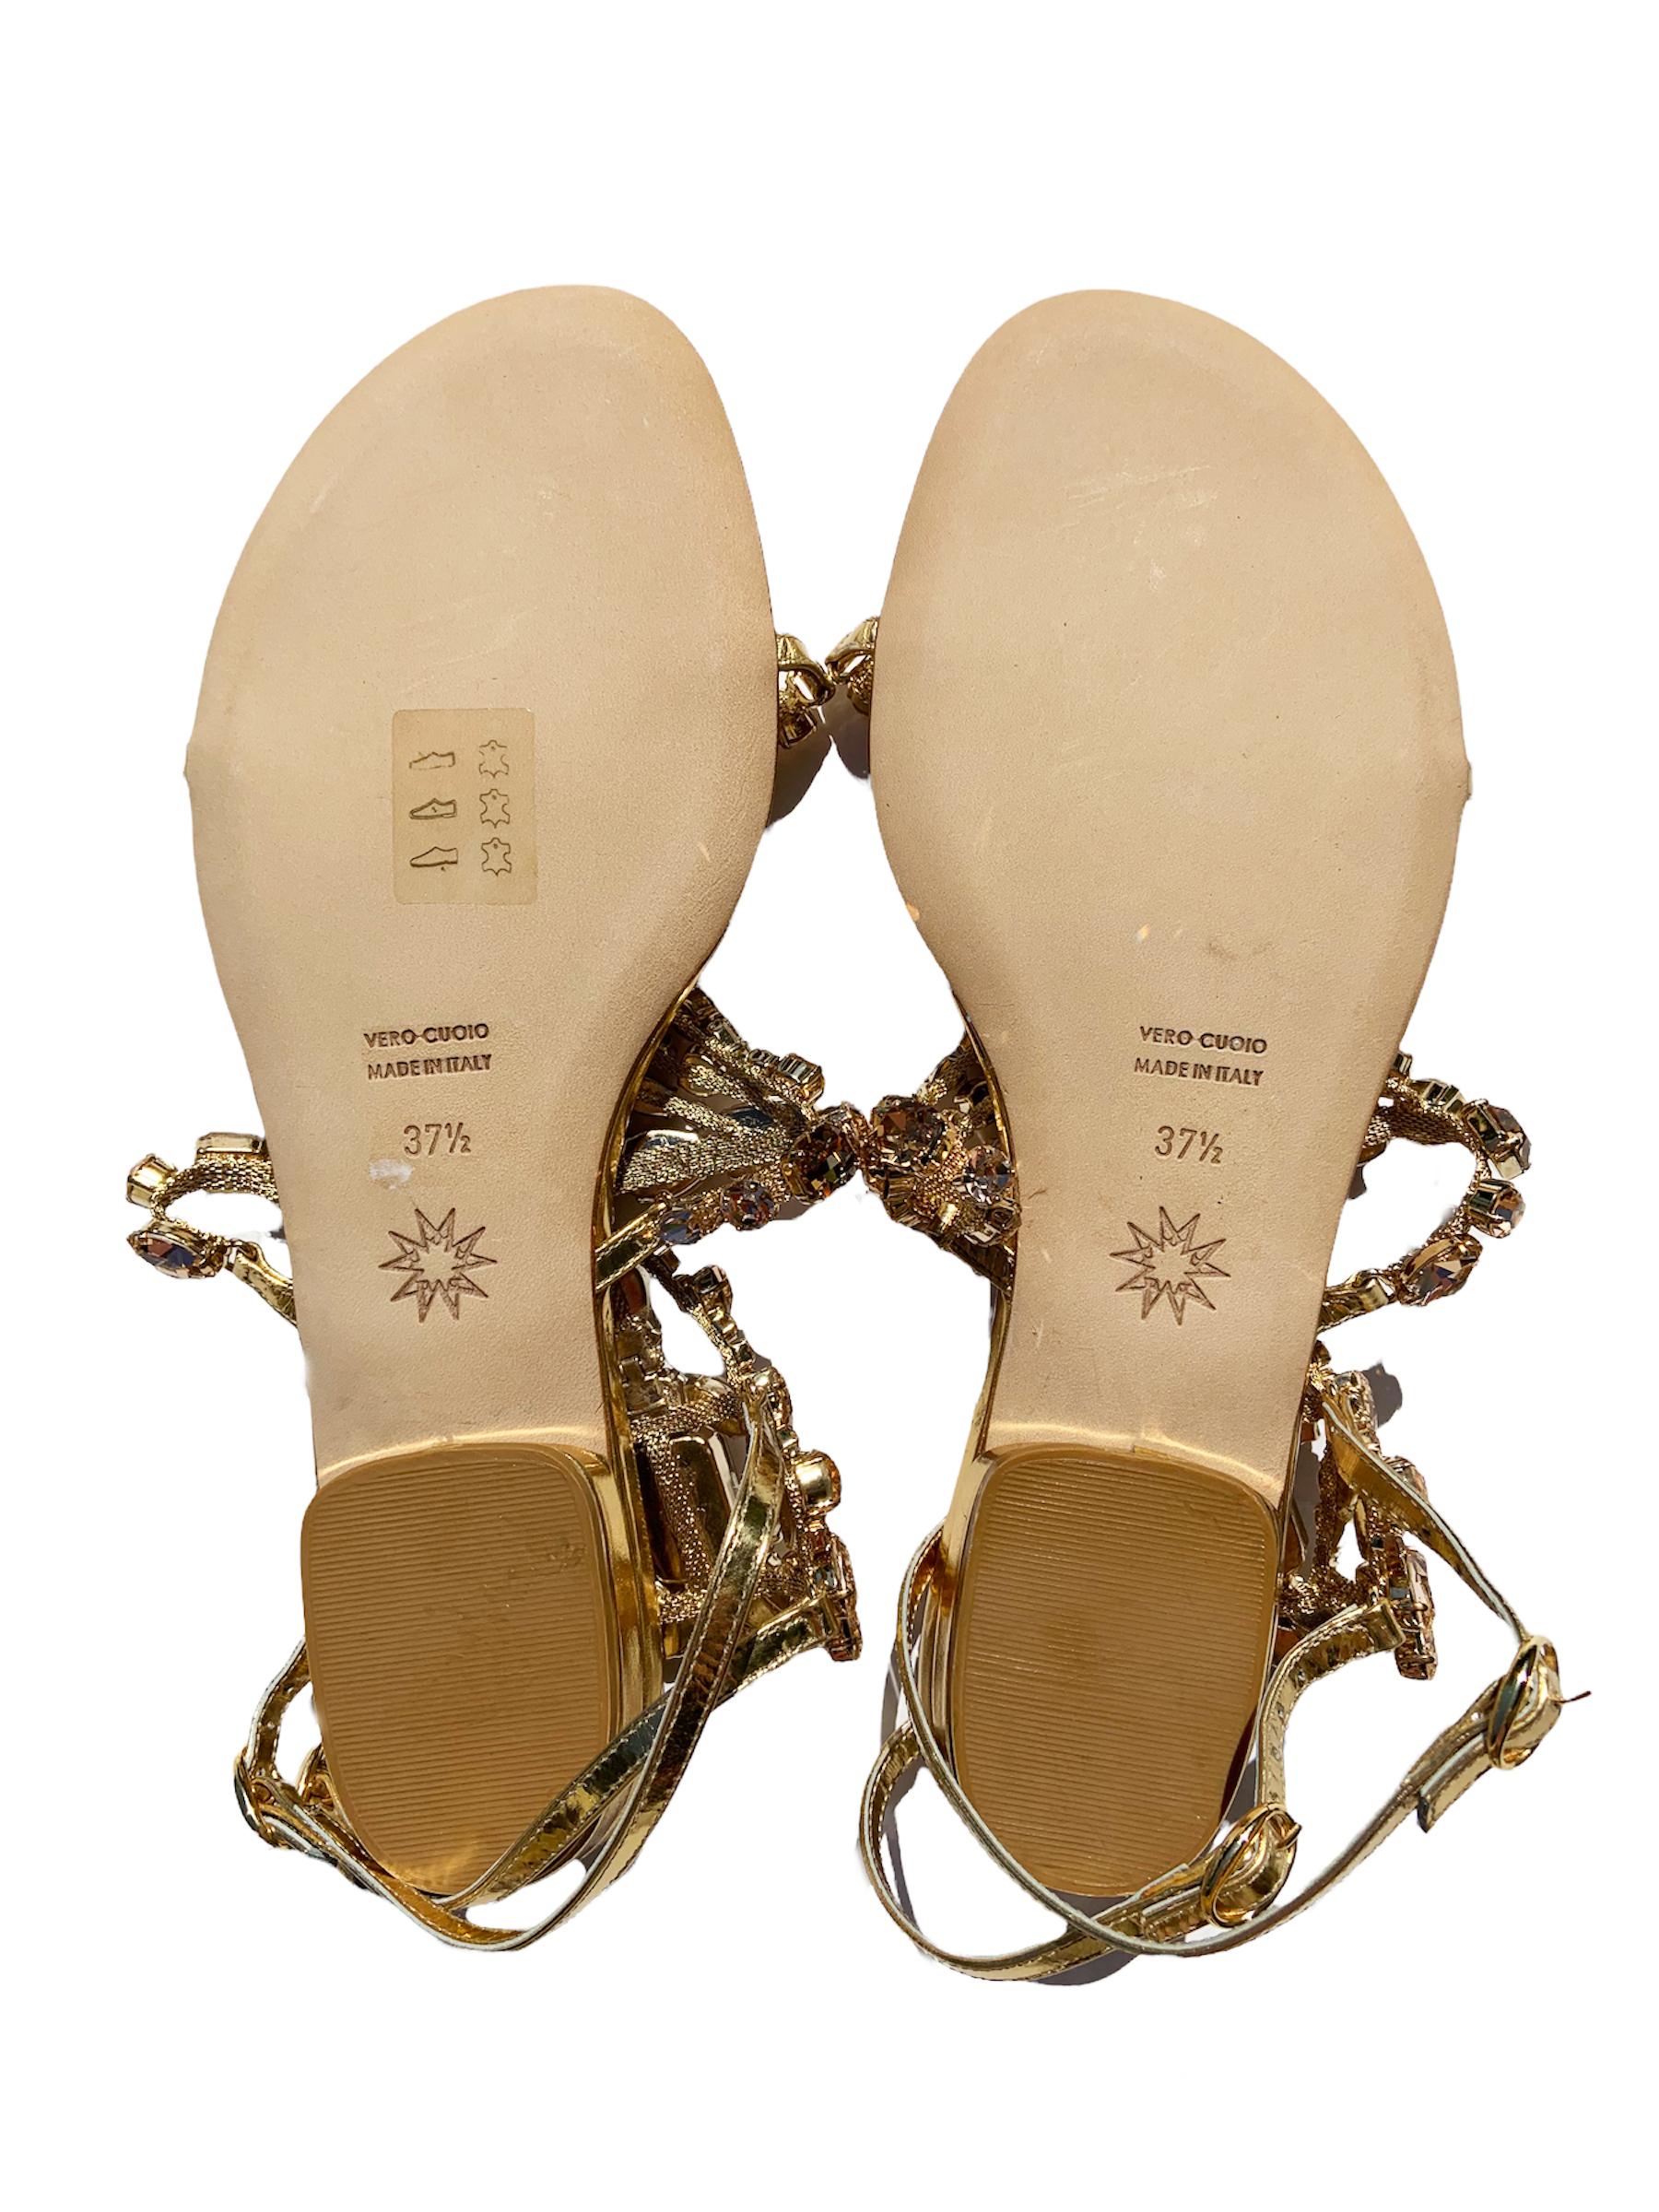 New Marchesa Emily Gold Pink Swarovski Crystal Embellished Flat Sandals 37.5 7.5 For Sale 1